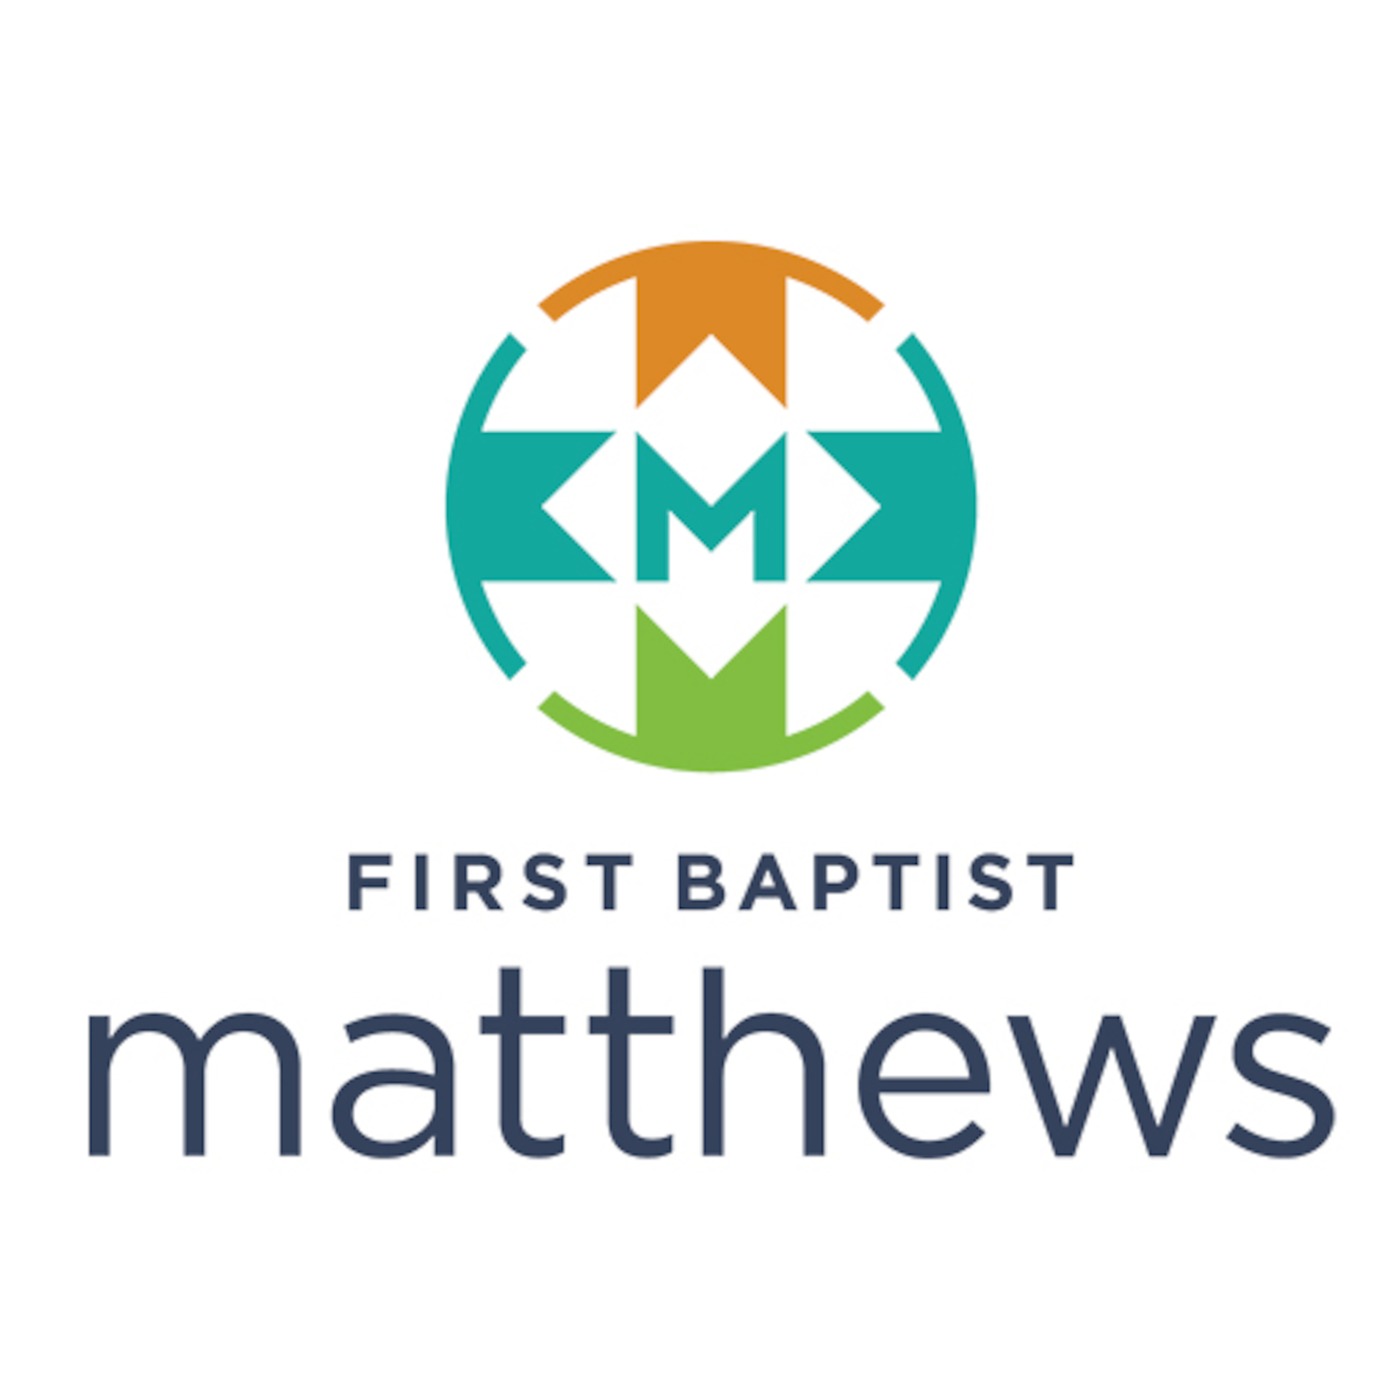 First Baptist Matthews